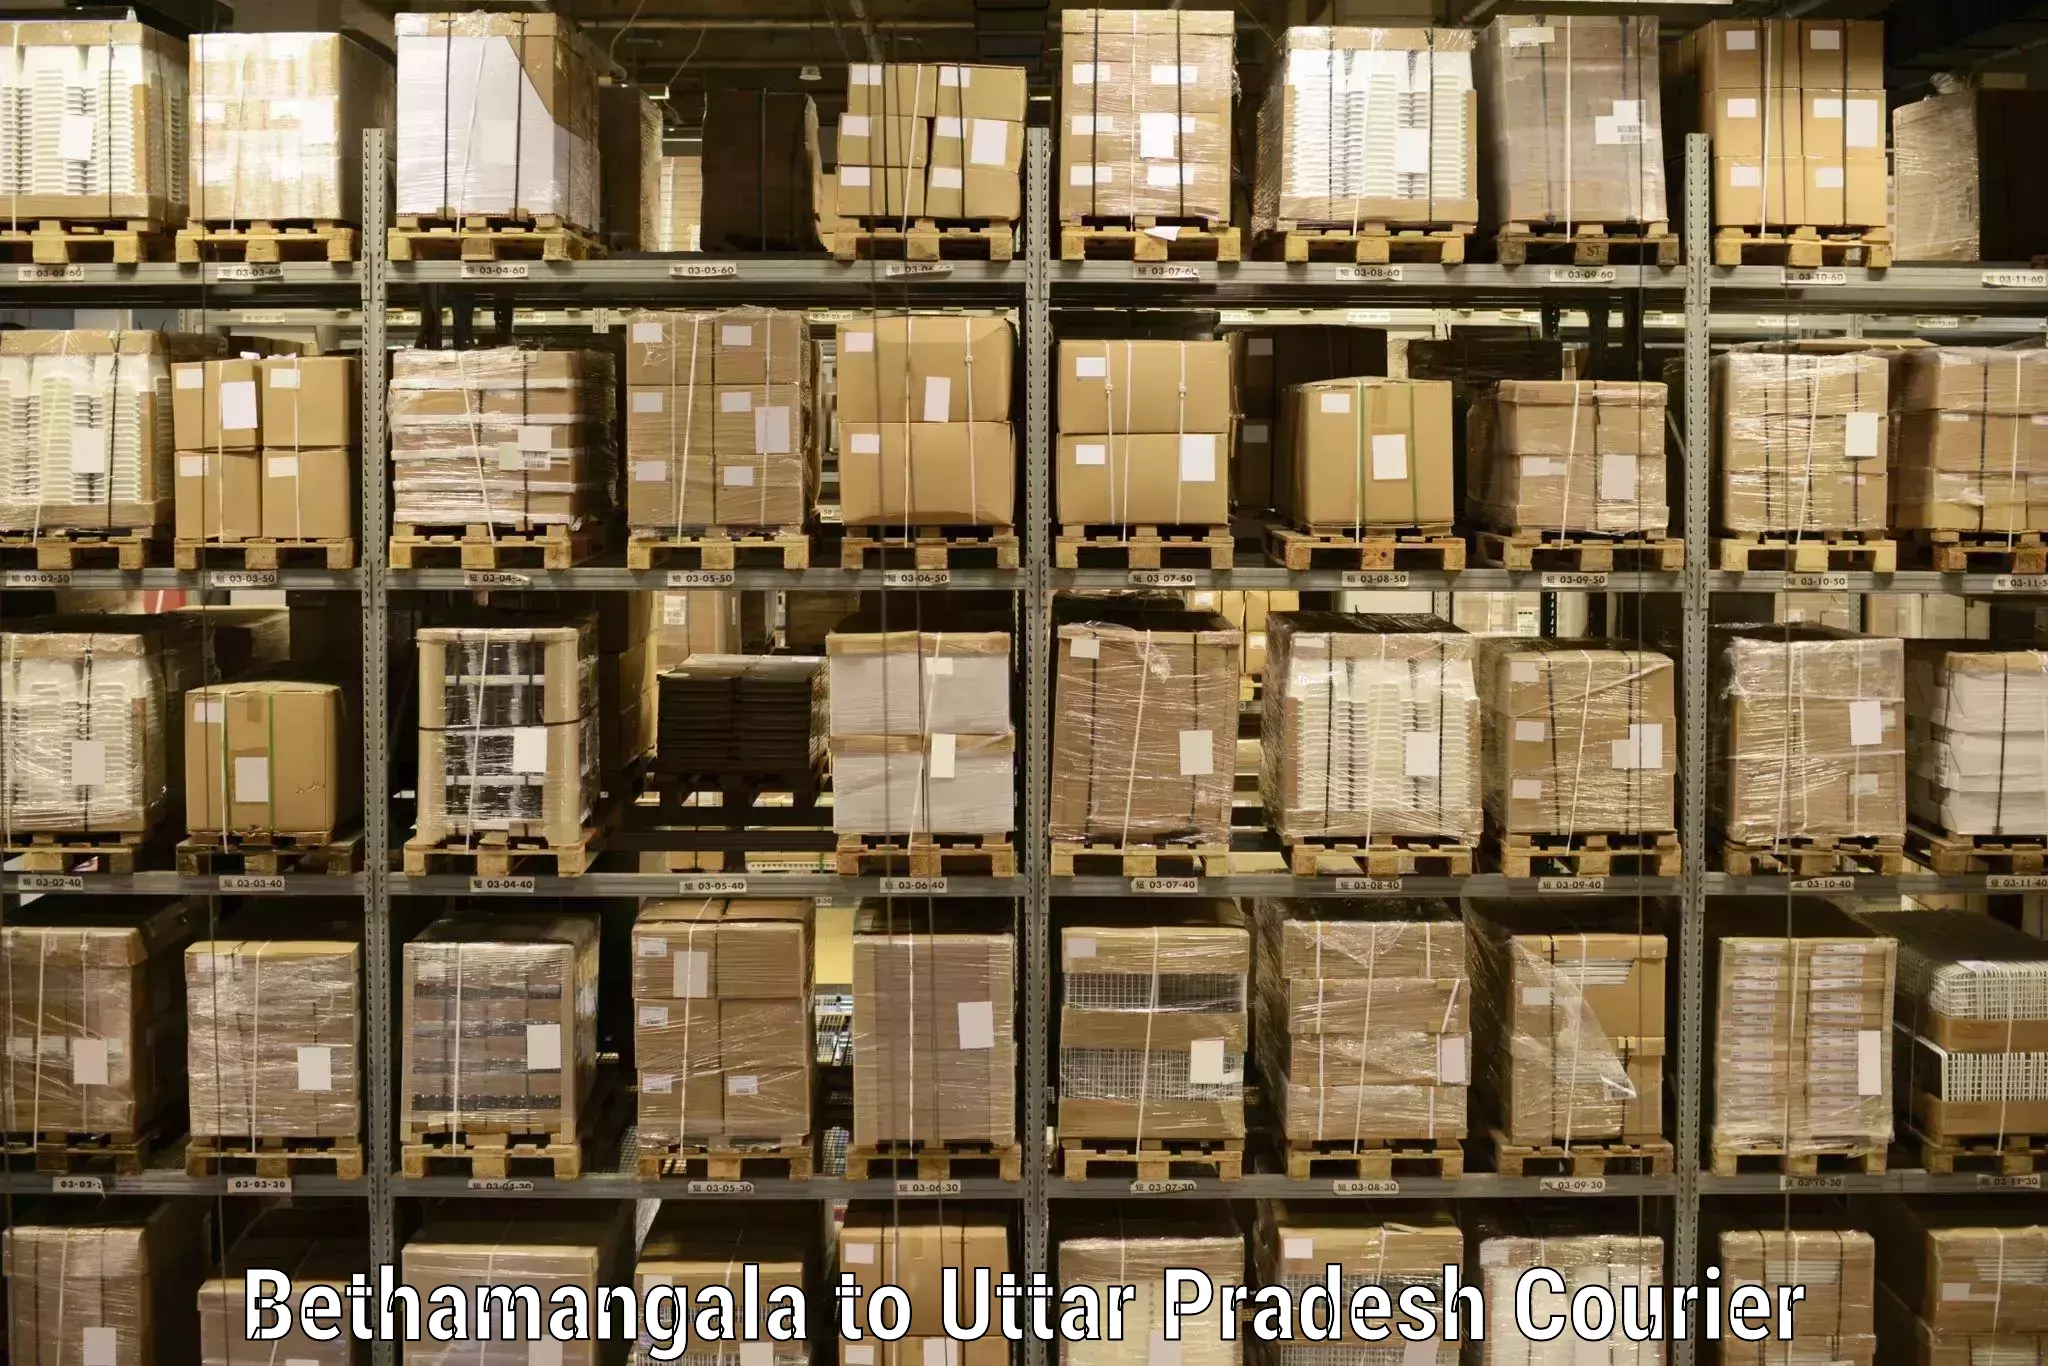 Specialized shipment handling Bethamangala to Rath